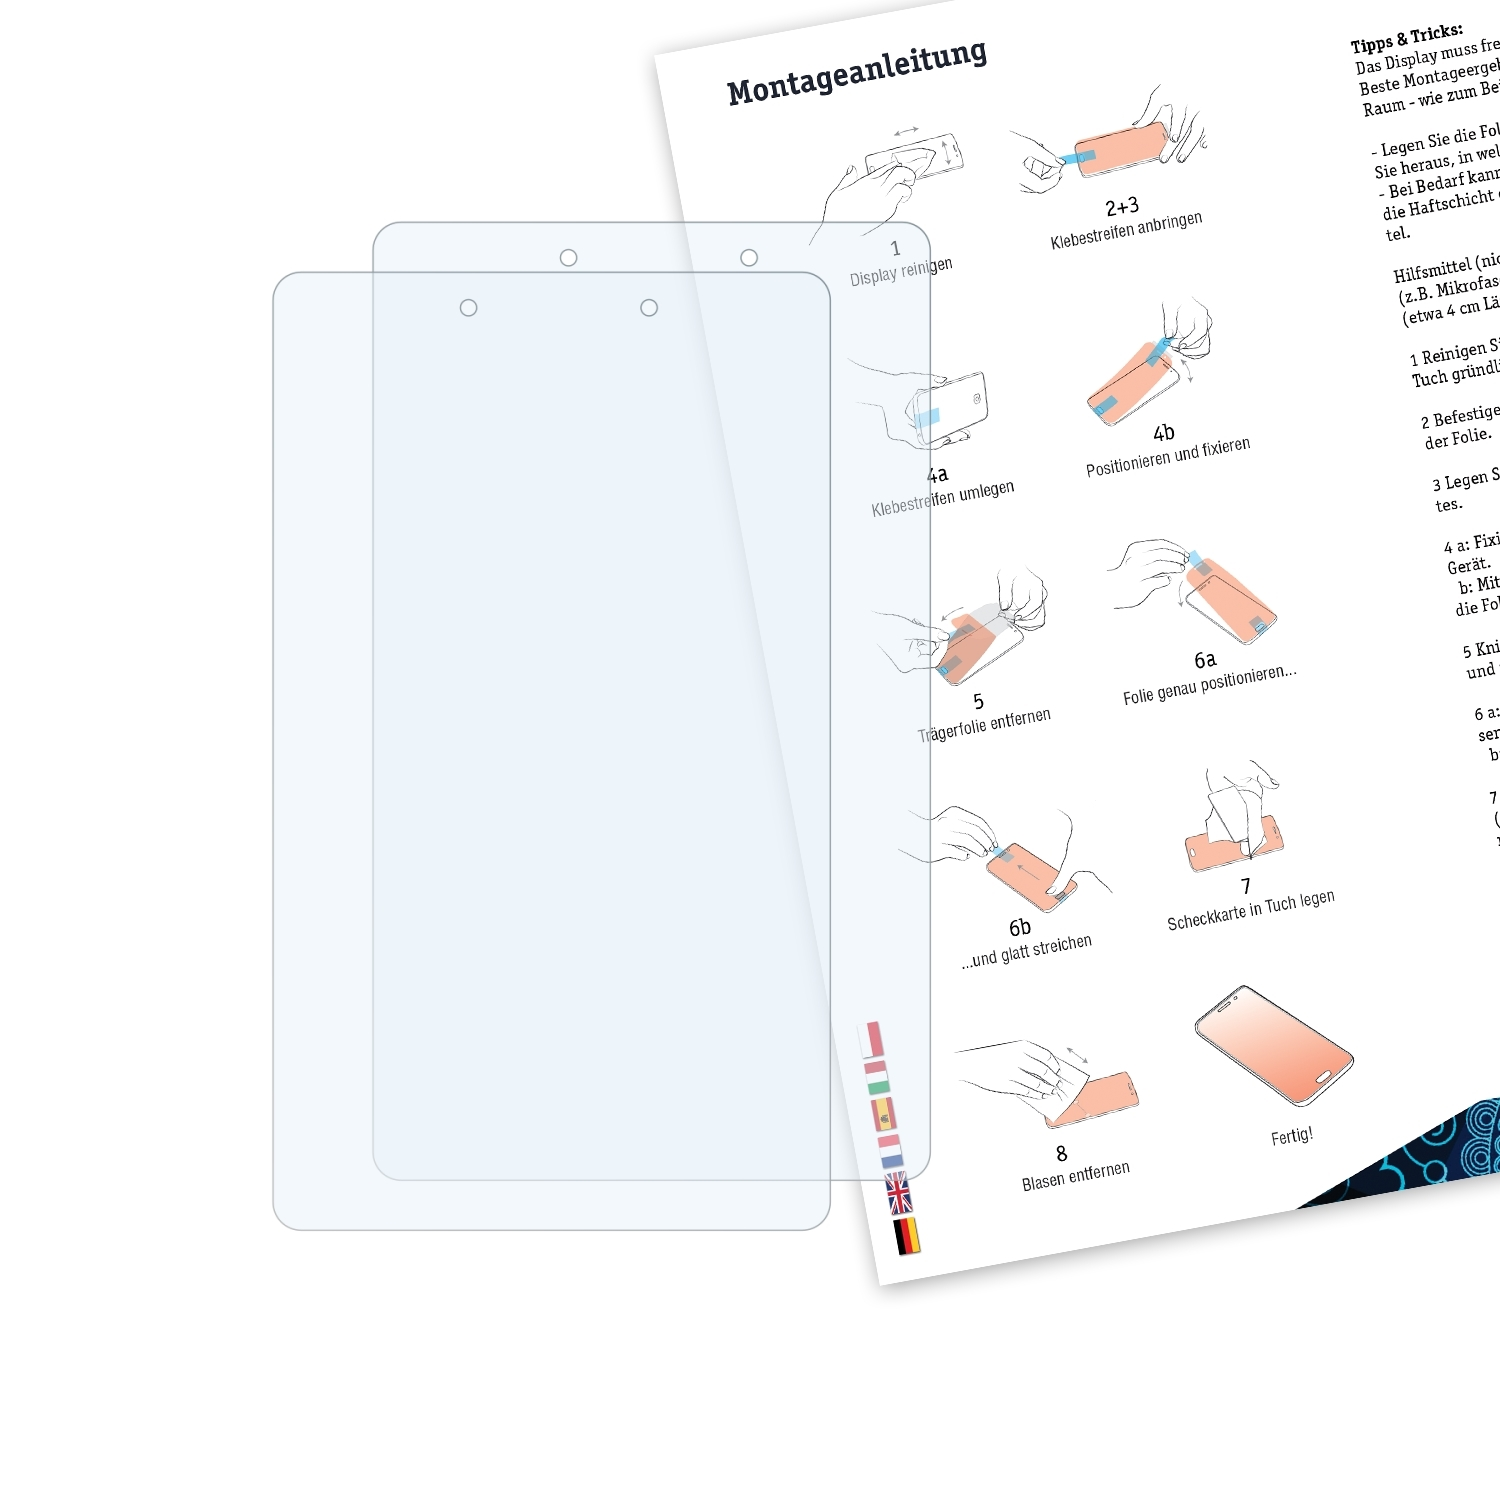 BRUNI 2x Basics-Clear (8.0 inch)) Samsung Schutzfolie(für (2019) Galaxy Tab A